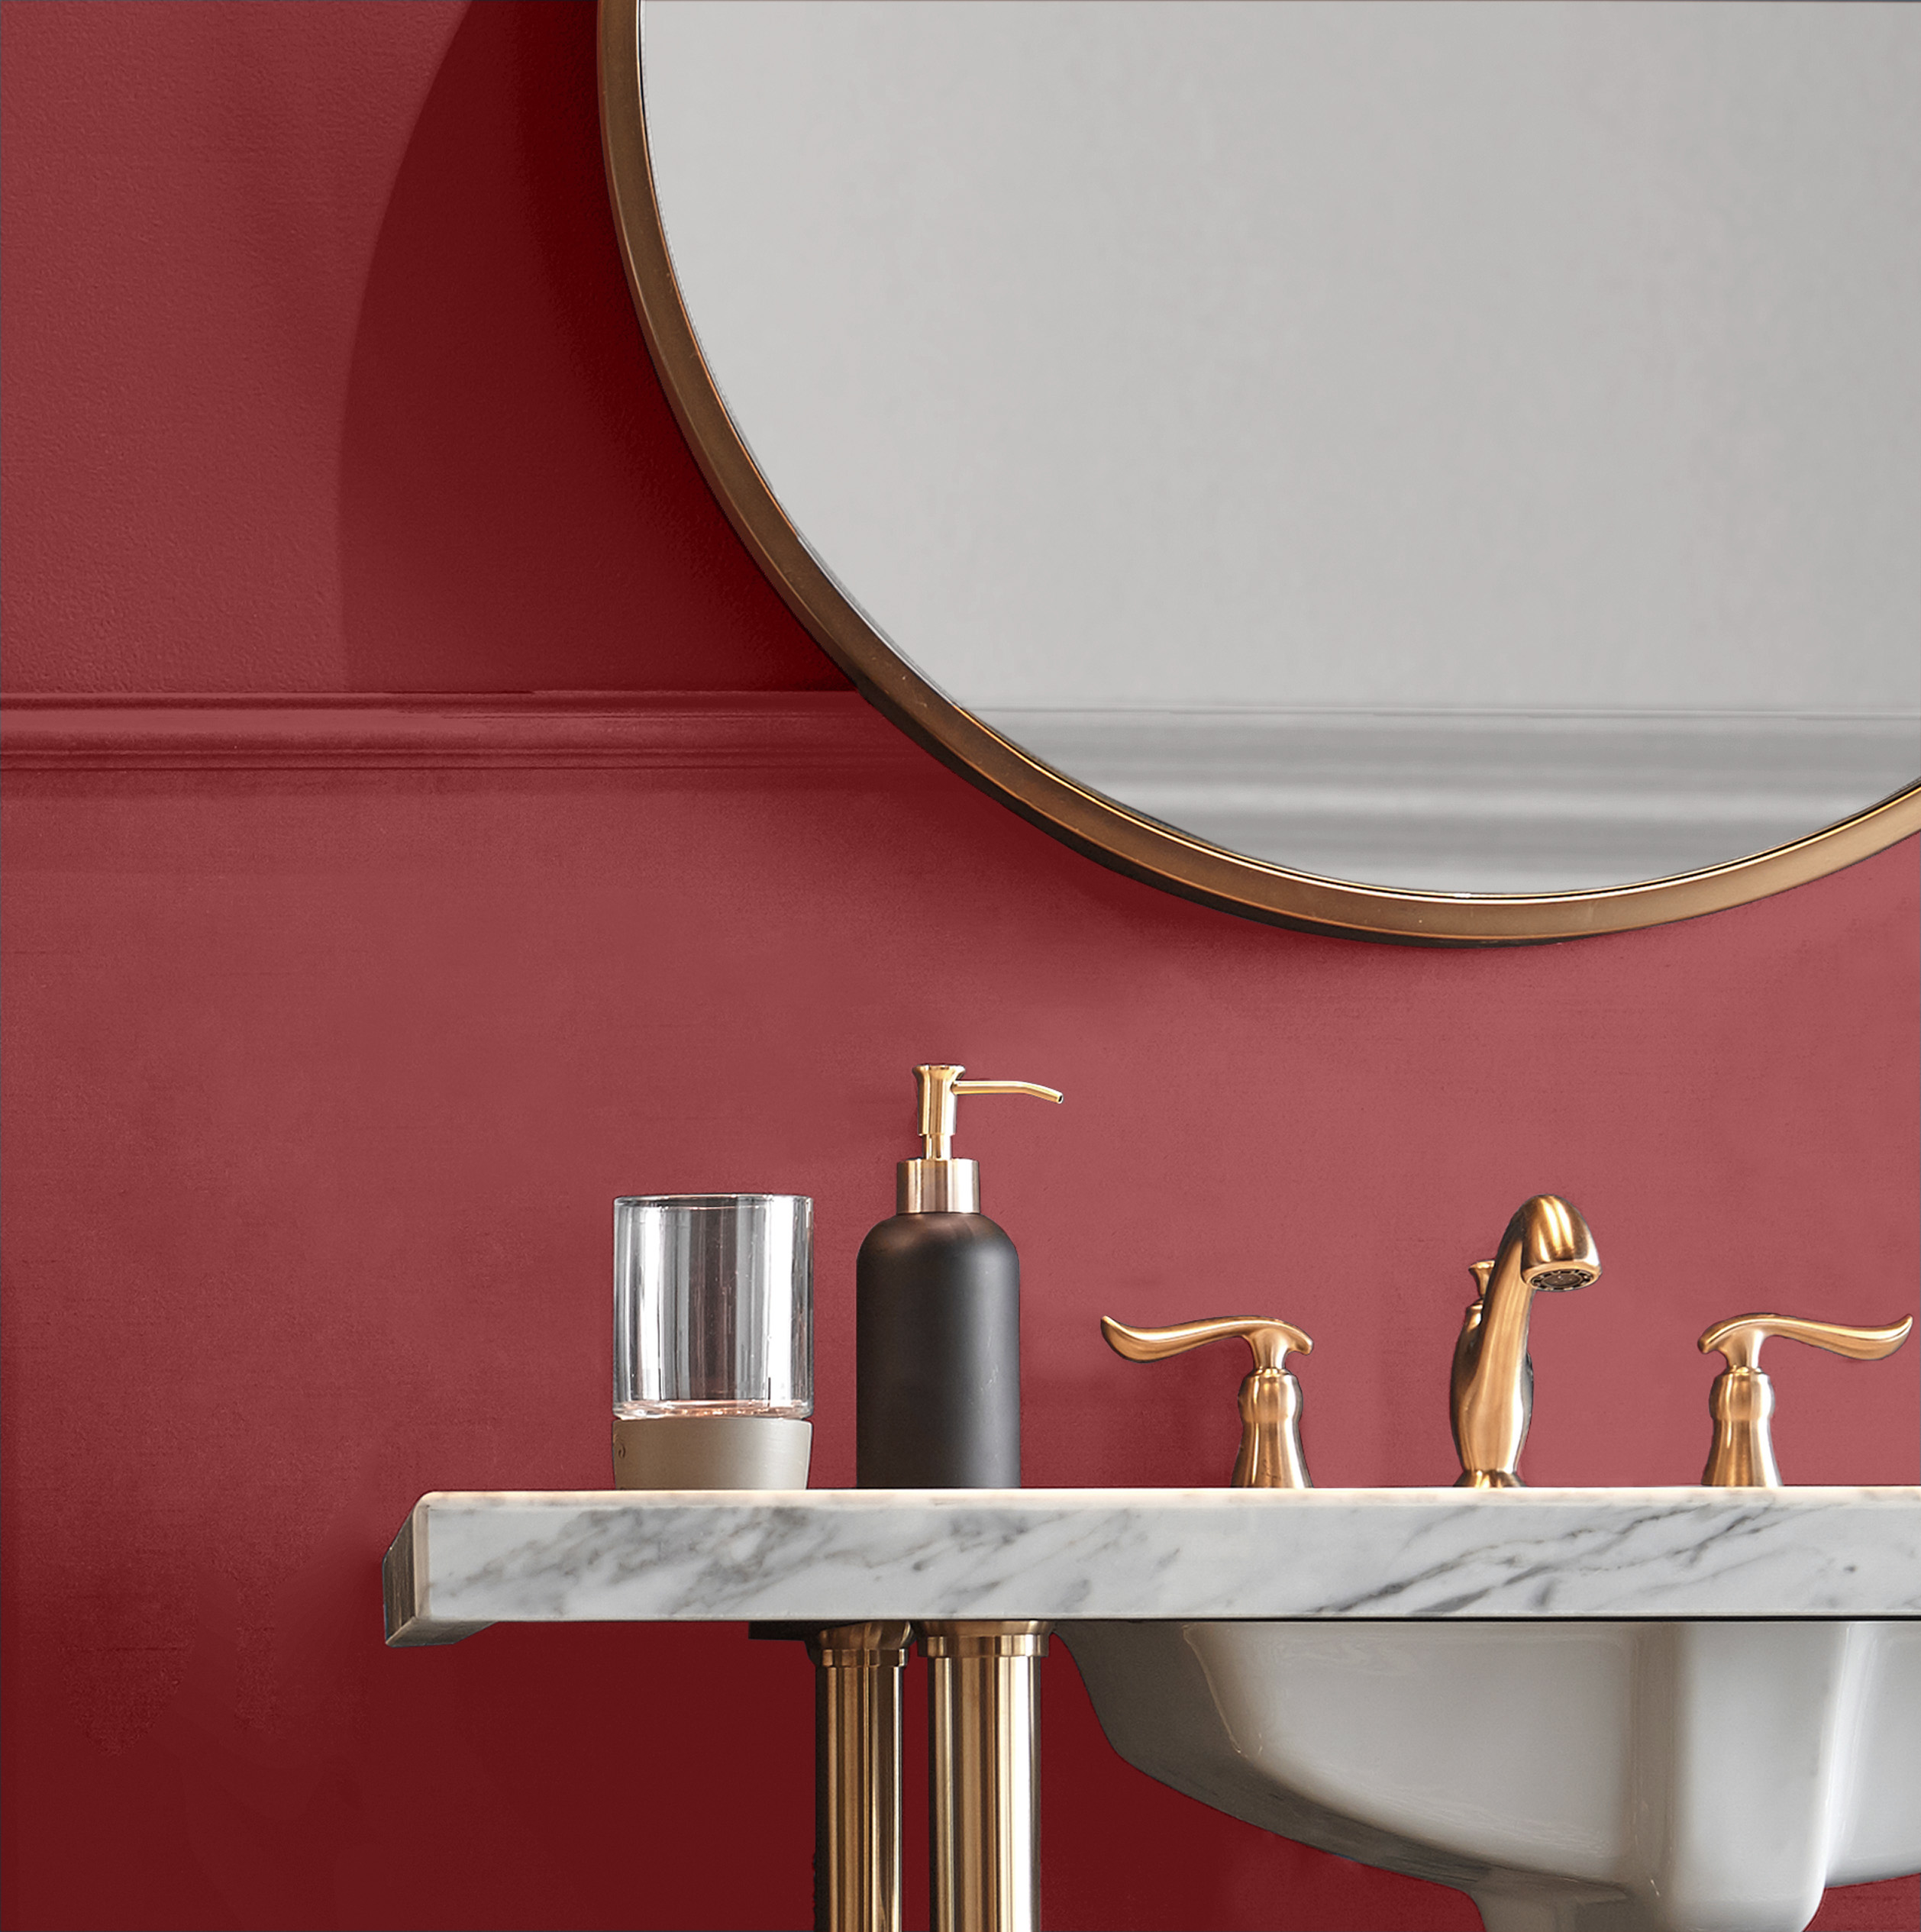 Une petite salle d'eau élégante peinturée en un rouge appelé Punch aux airelles. La quincaillerie est fabriquée dans une couleur métallique chaude.